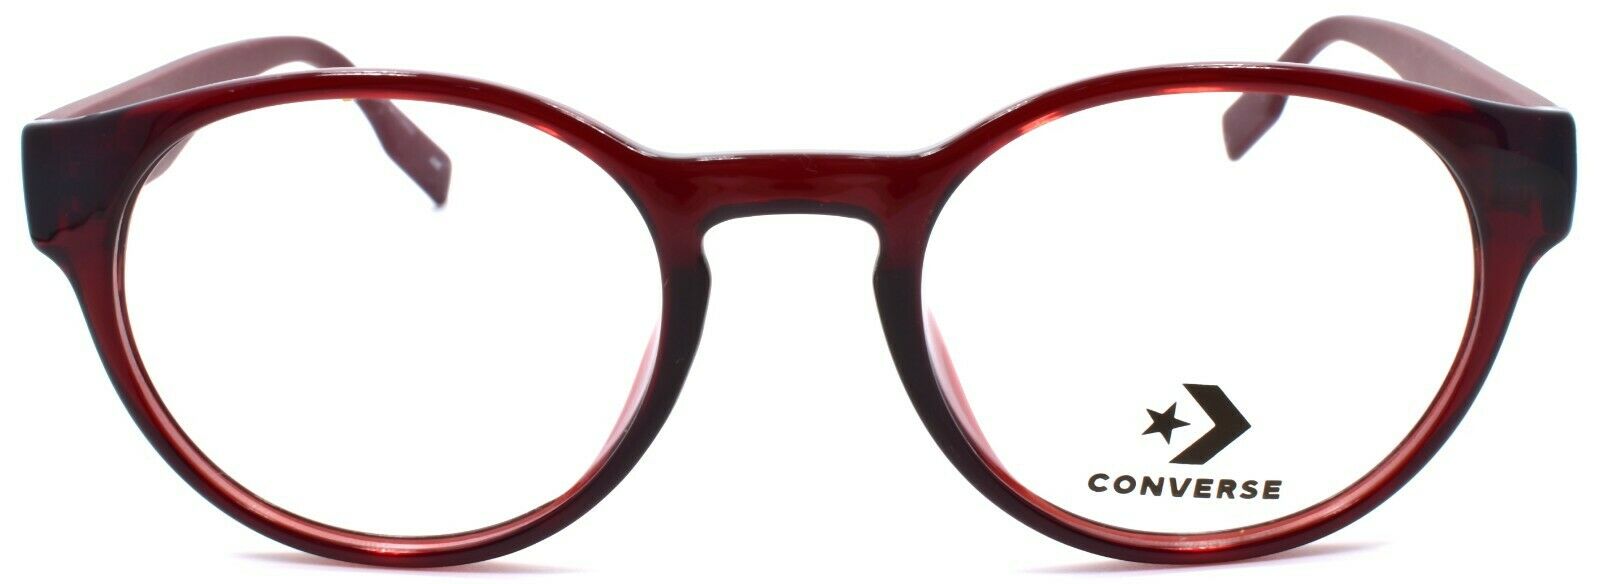 2-CONVERSE CV5018 610 Men's Eyeglasses Frames Round 49-20-145 Crystal Team Red-886895508551-IKSpecs